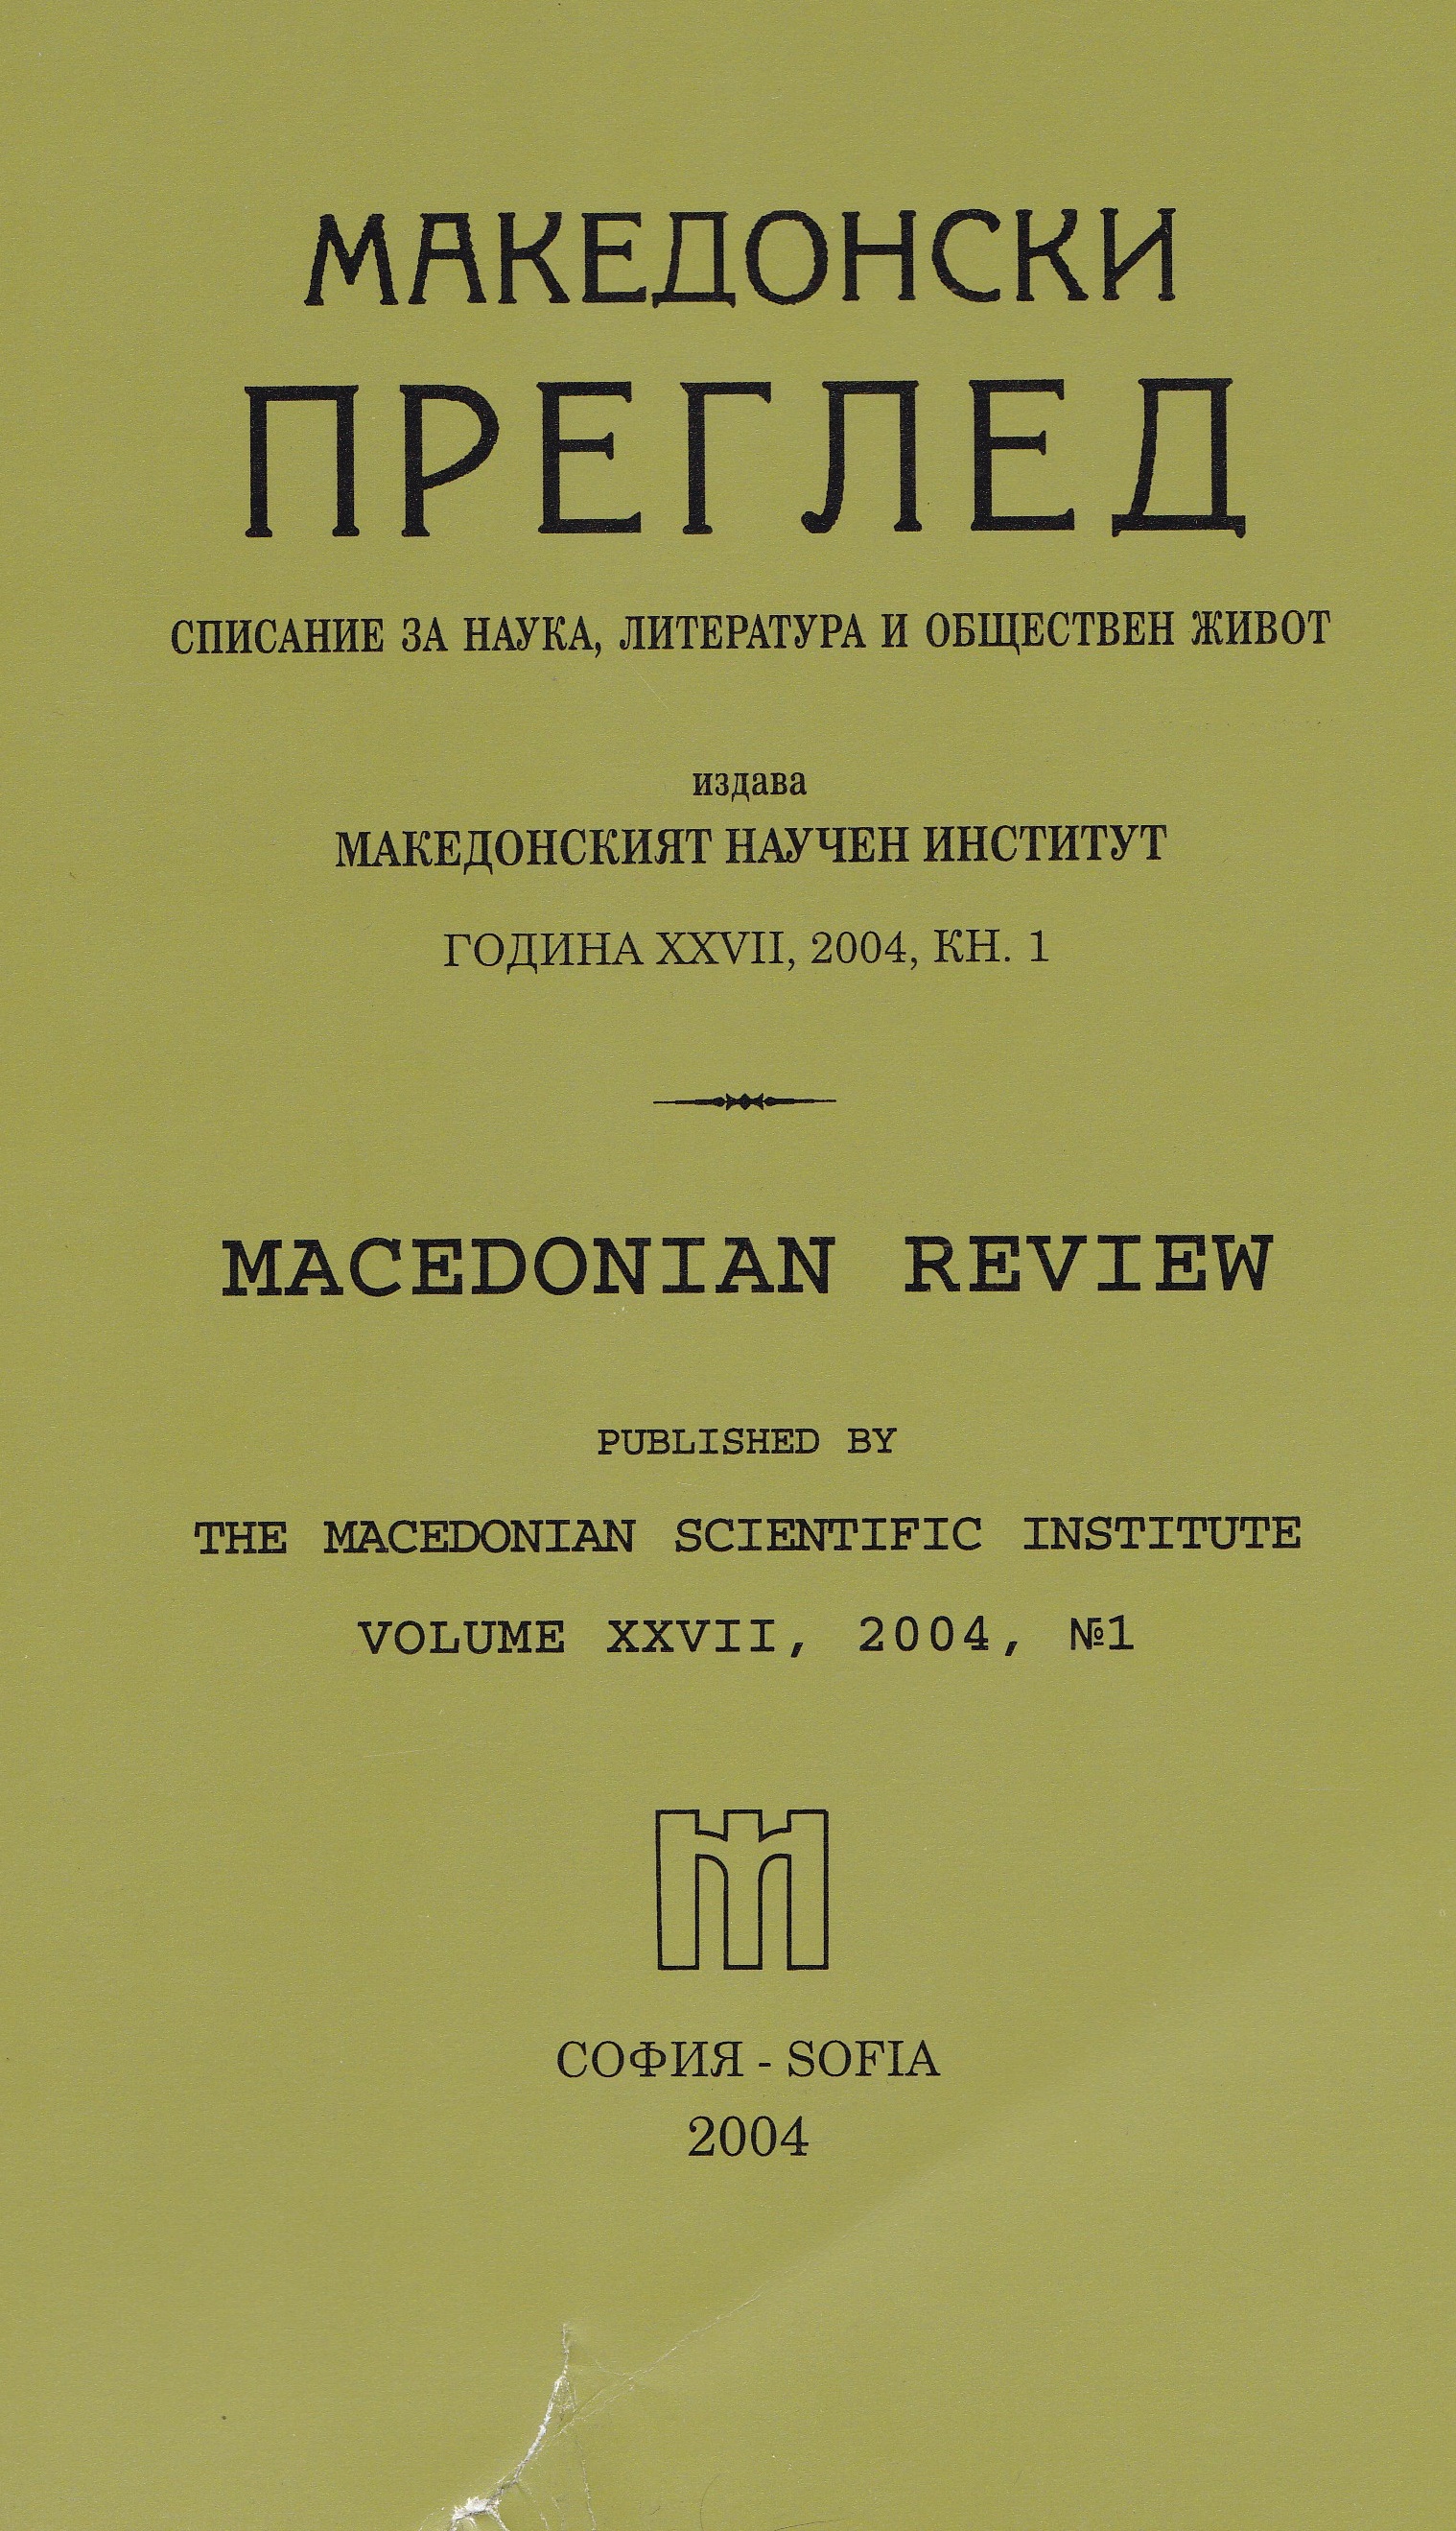 Териториално-географското значение на определението македонски в български речници през Възраждането